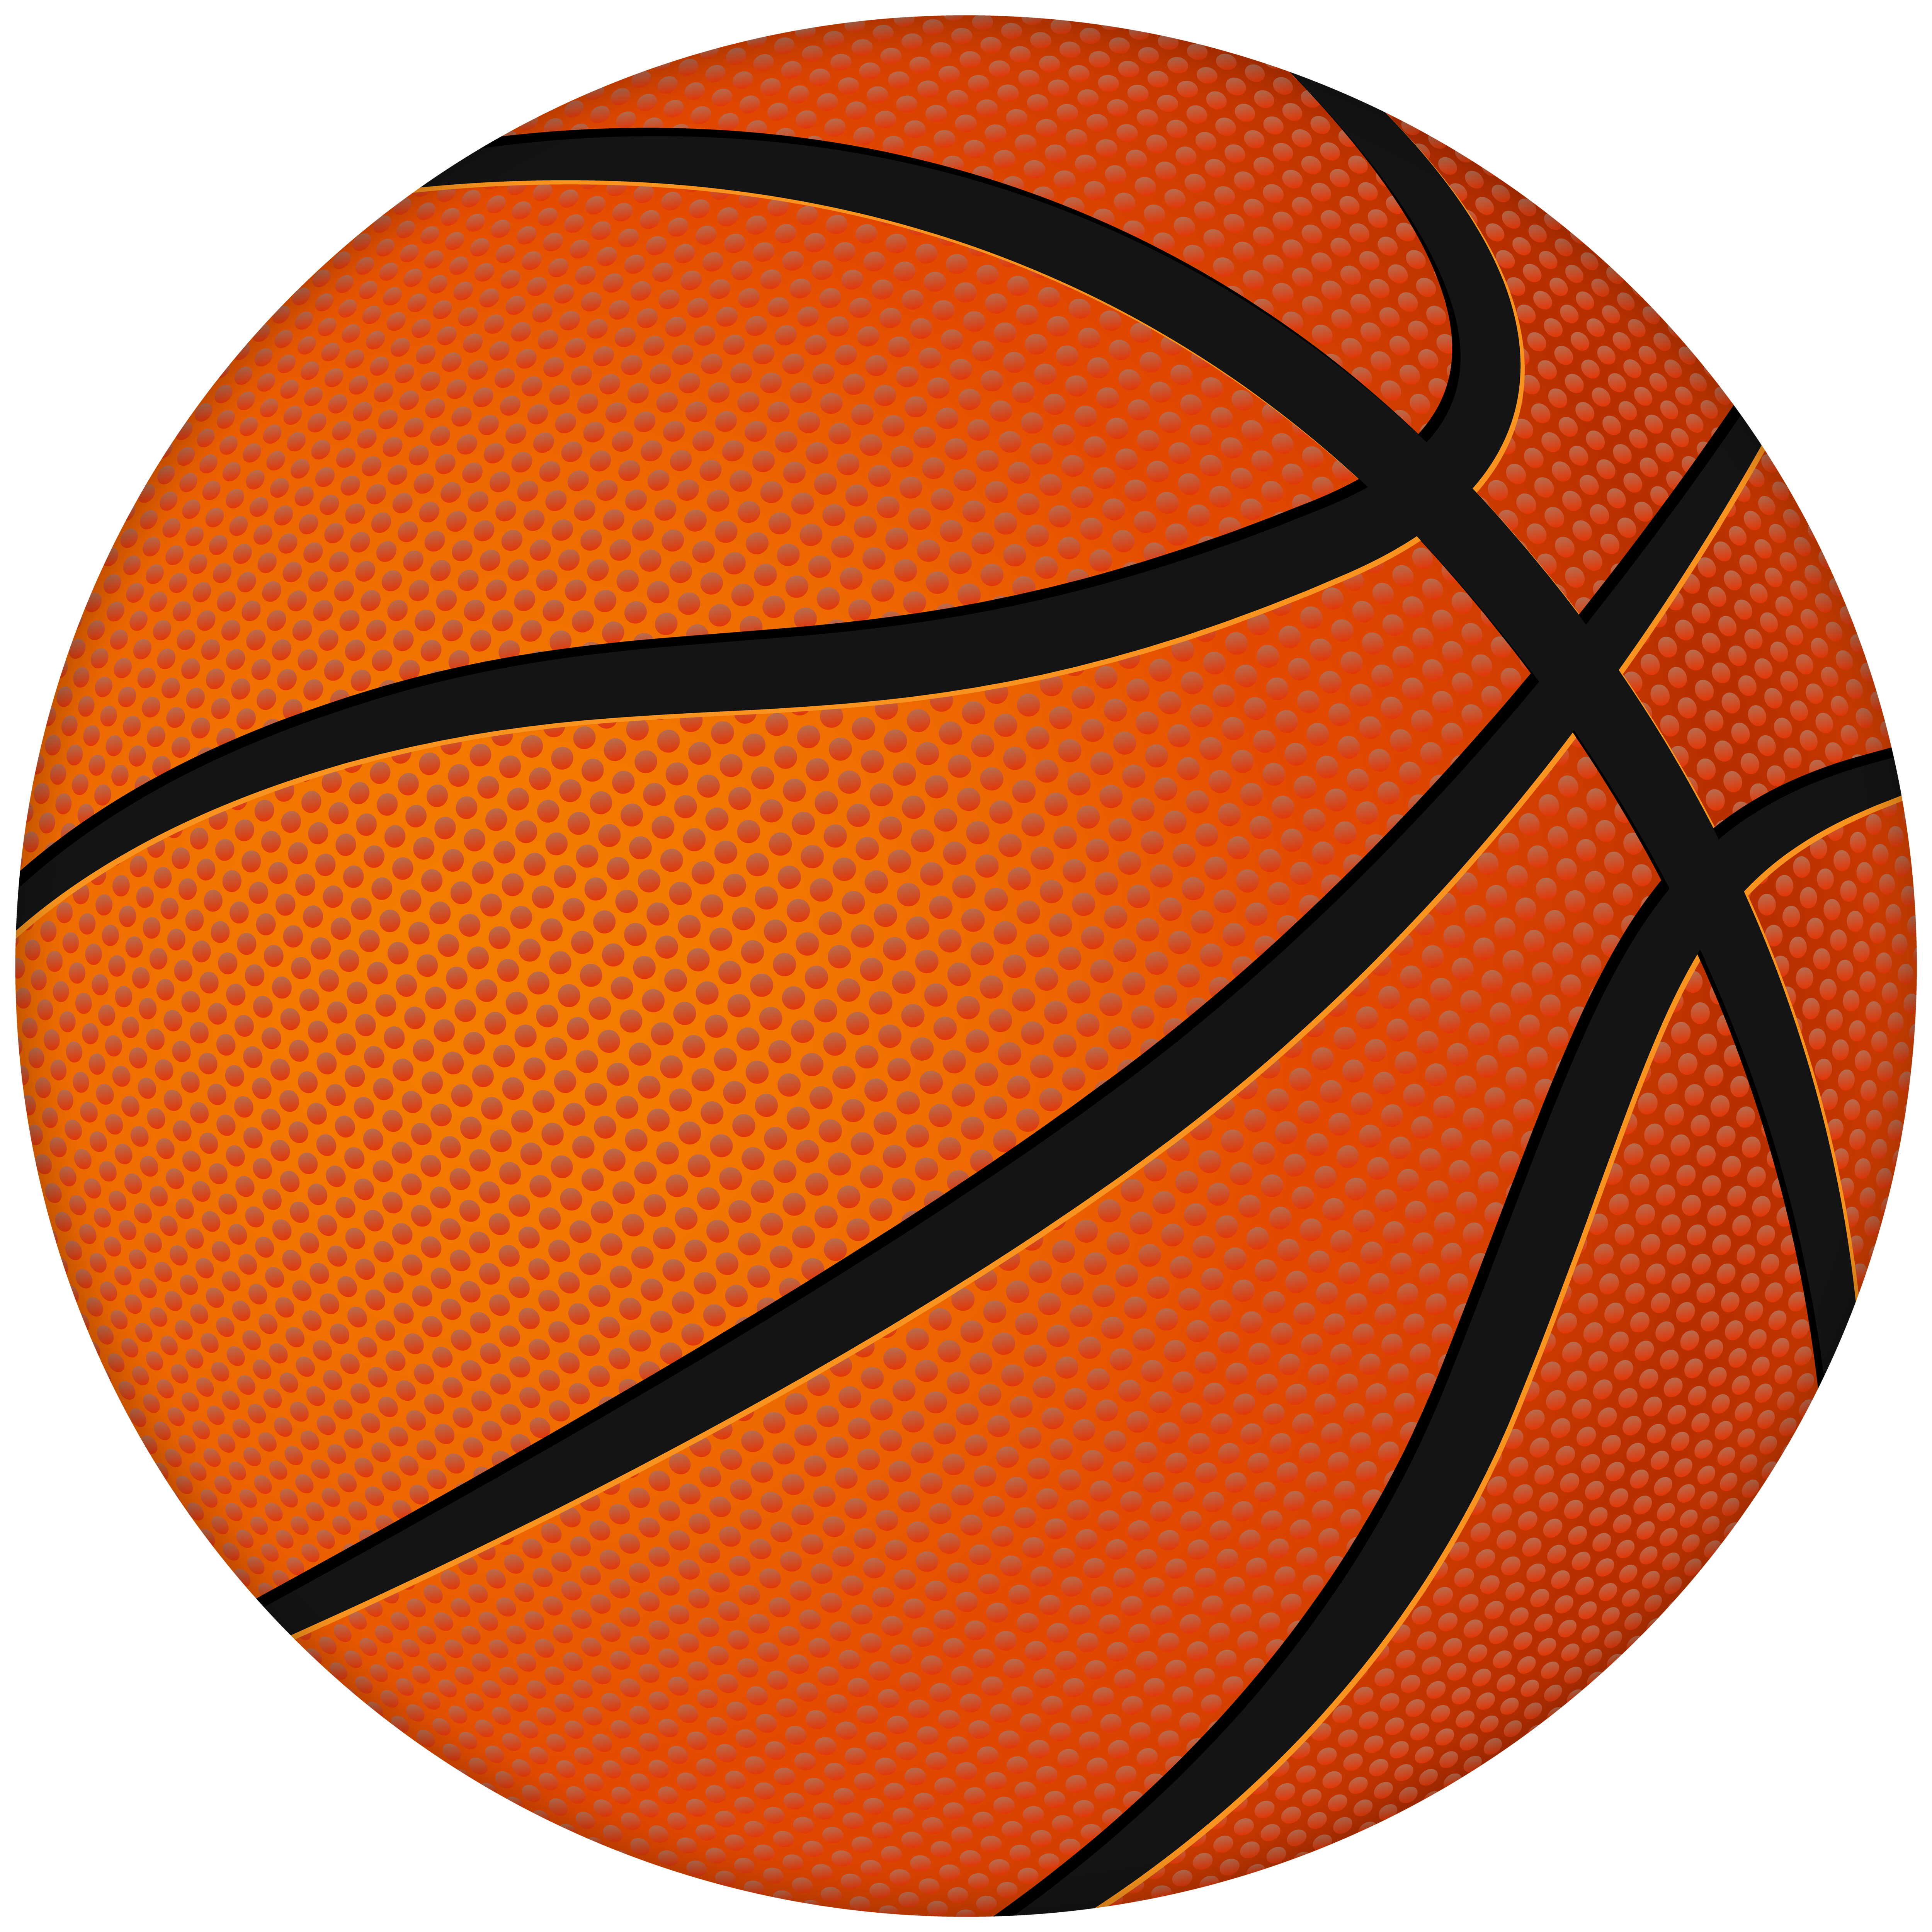 clipart basketball ball